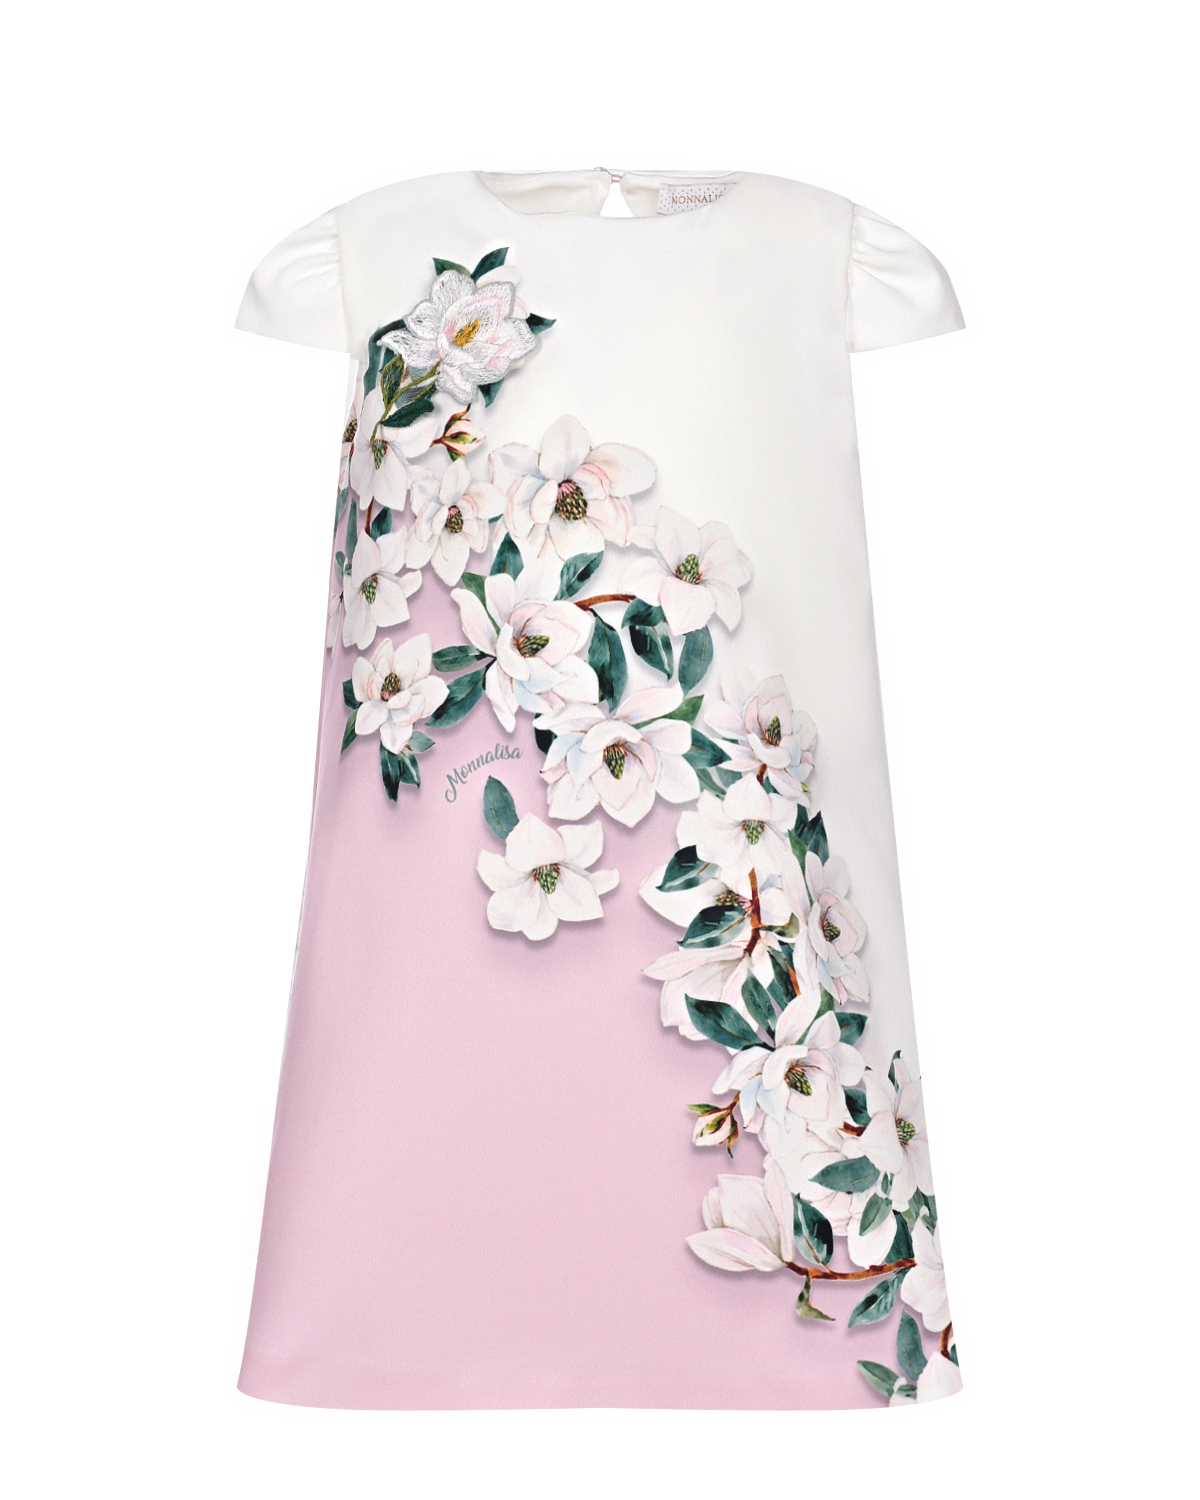 Бело-розовое платье с цветочным принтом Monnalisa розовое многослойное платье gulliver 164